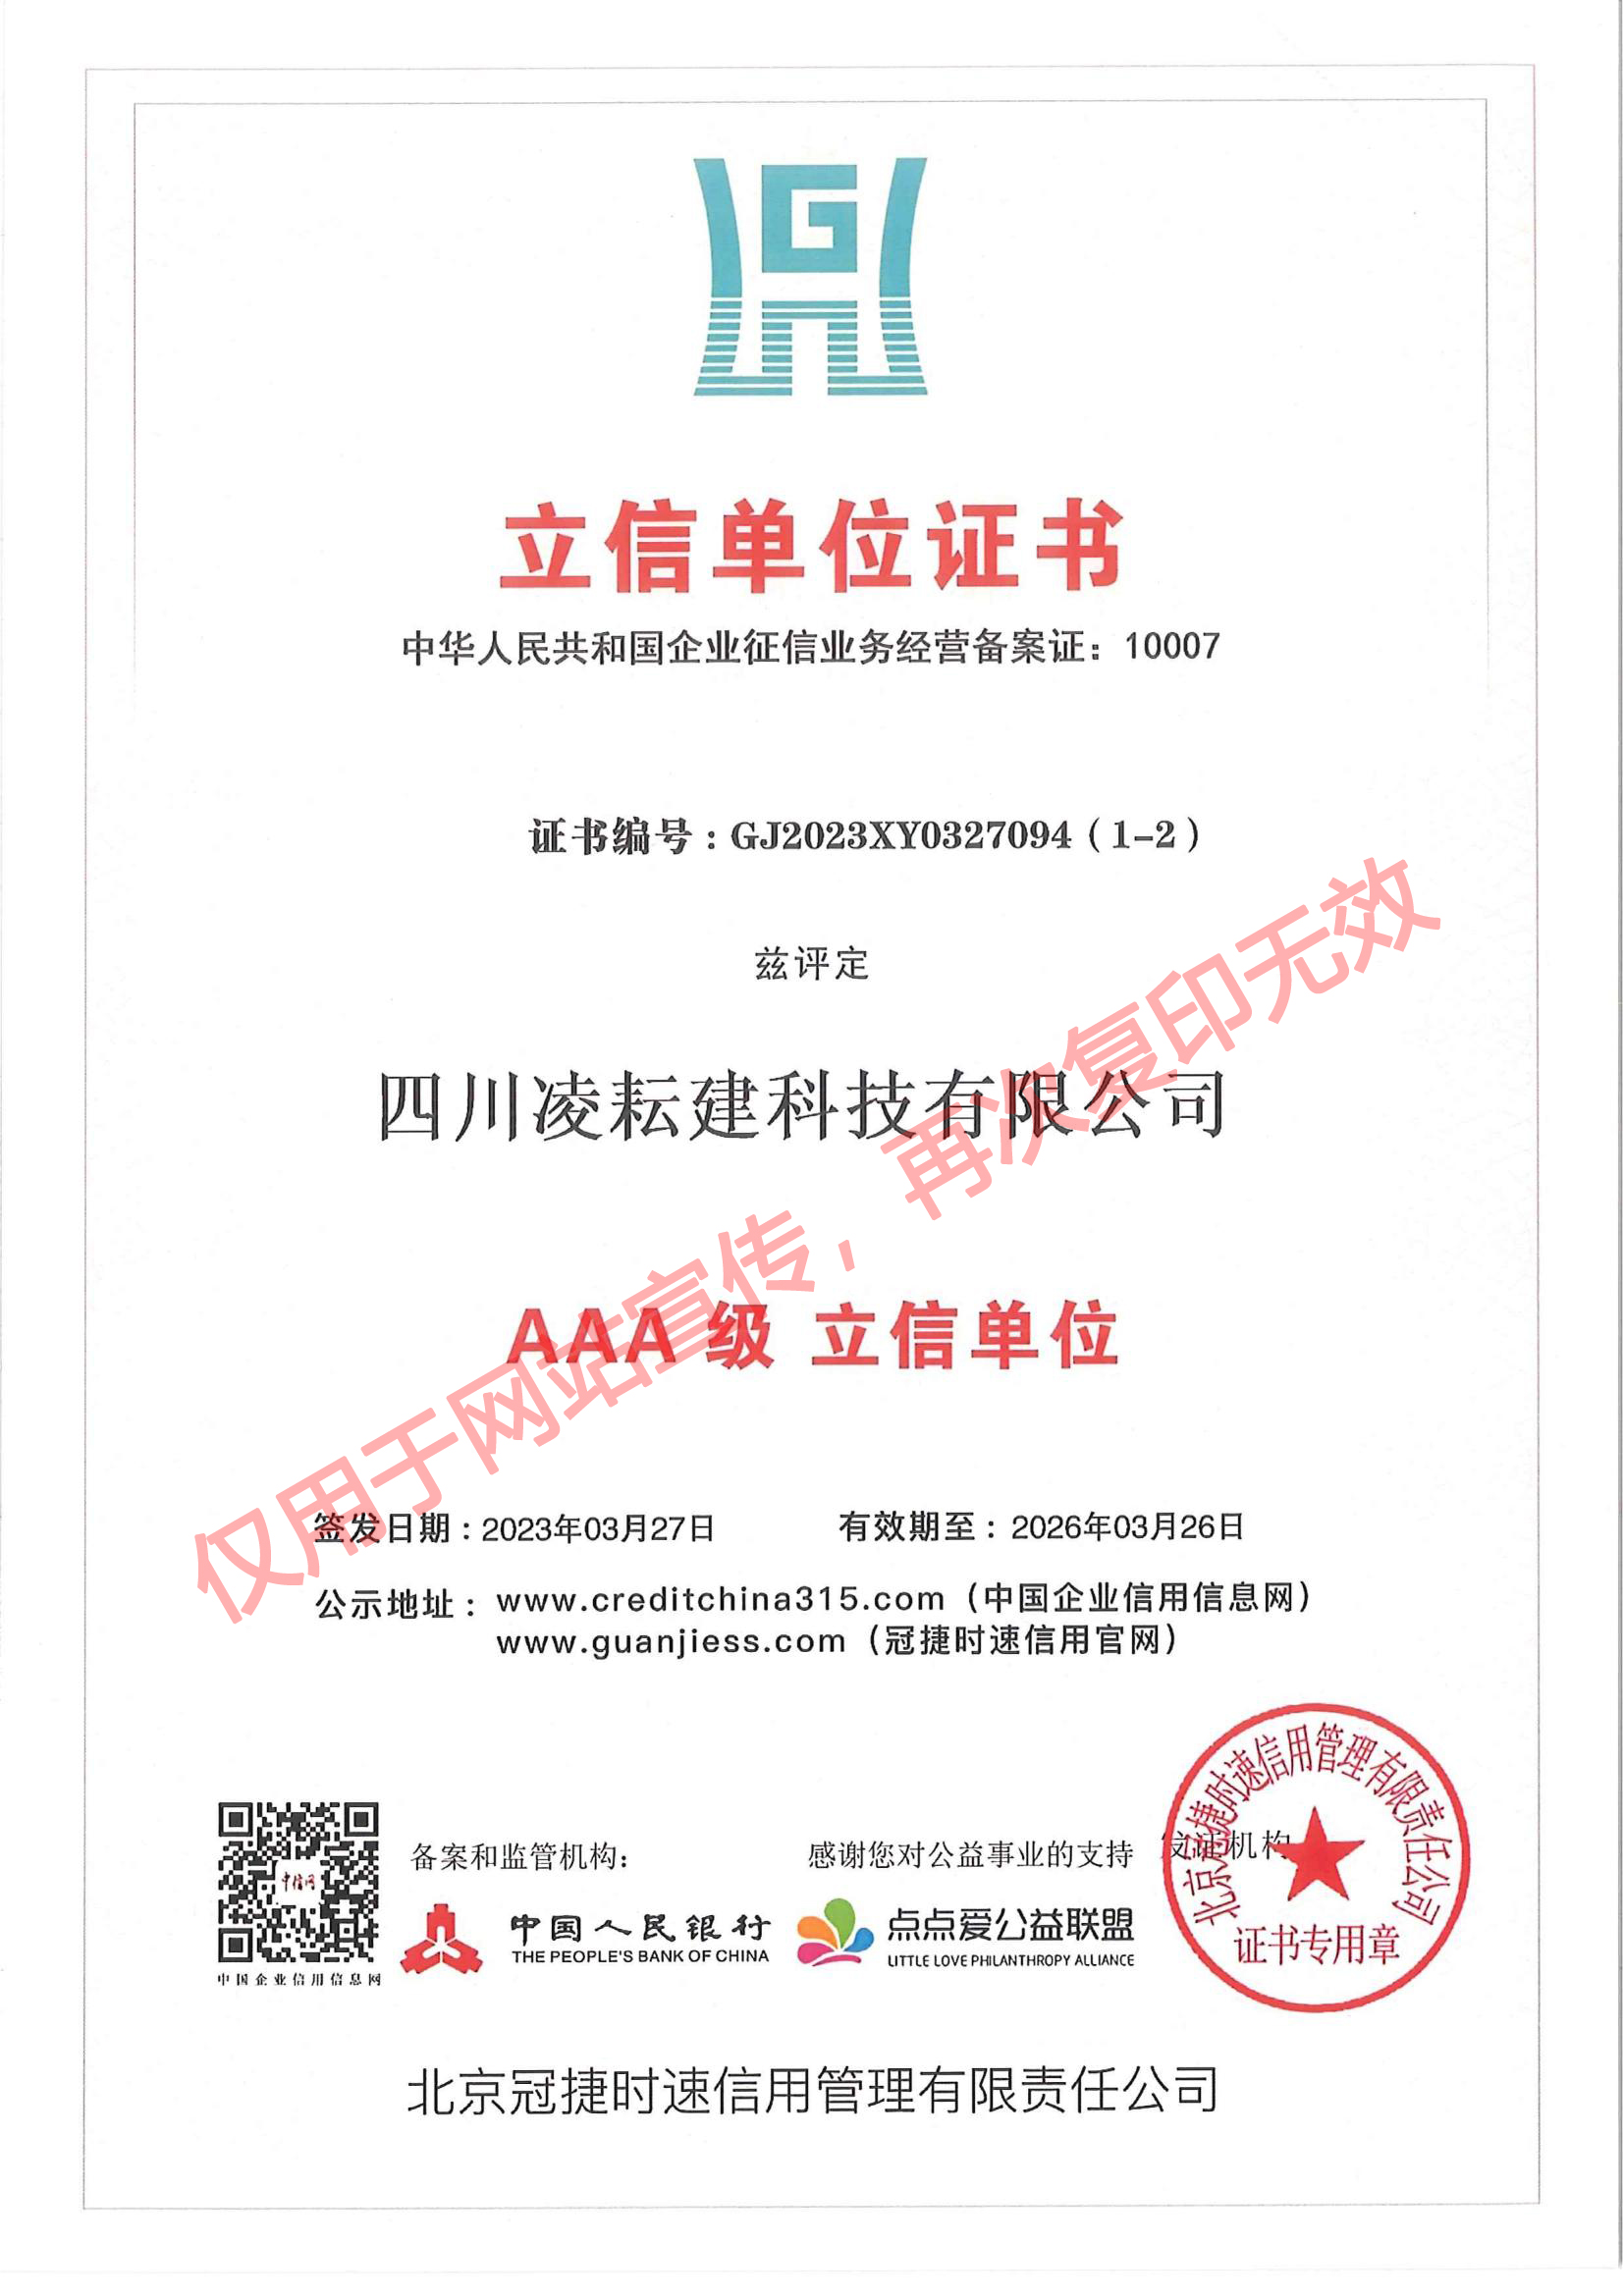 LYJ-040 立信单位证书（AAA级立信单位）北京冠捷时速_00.jpg